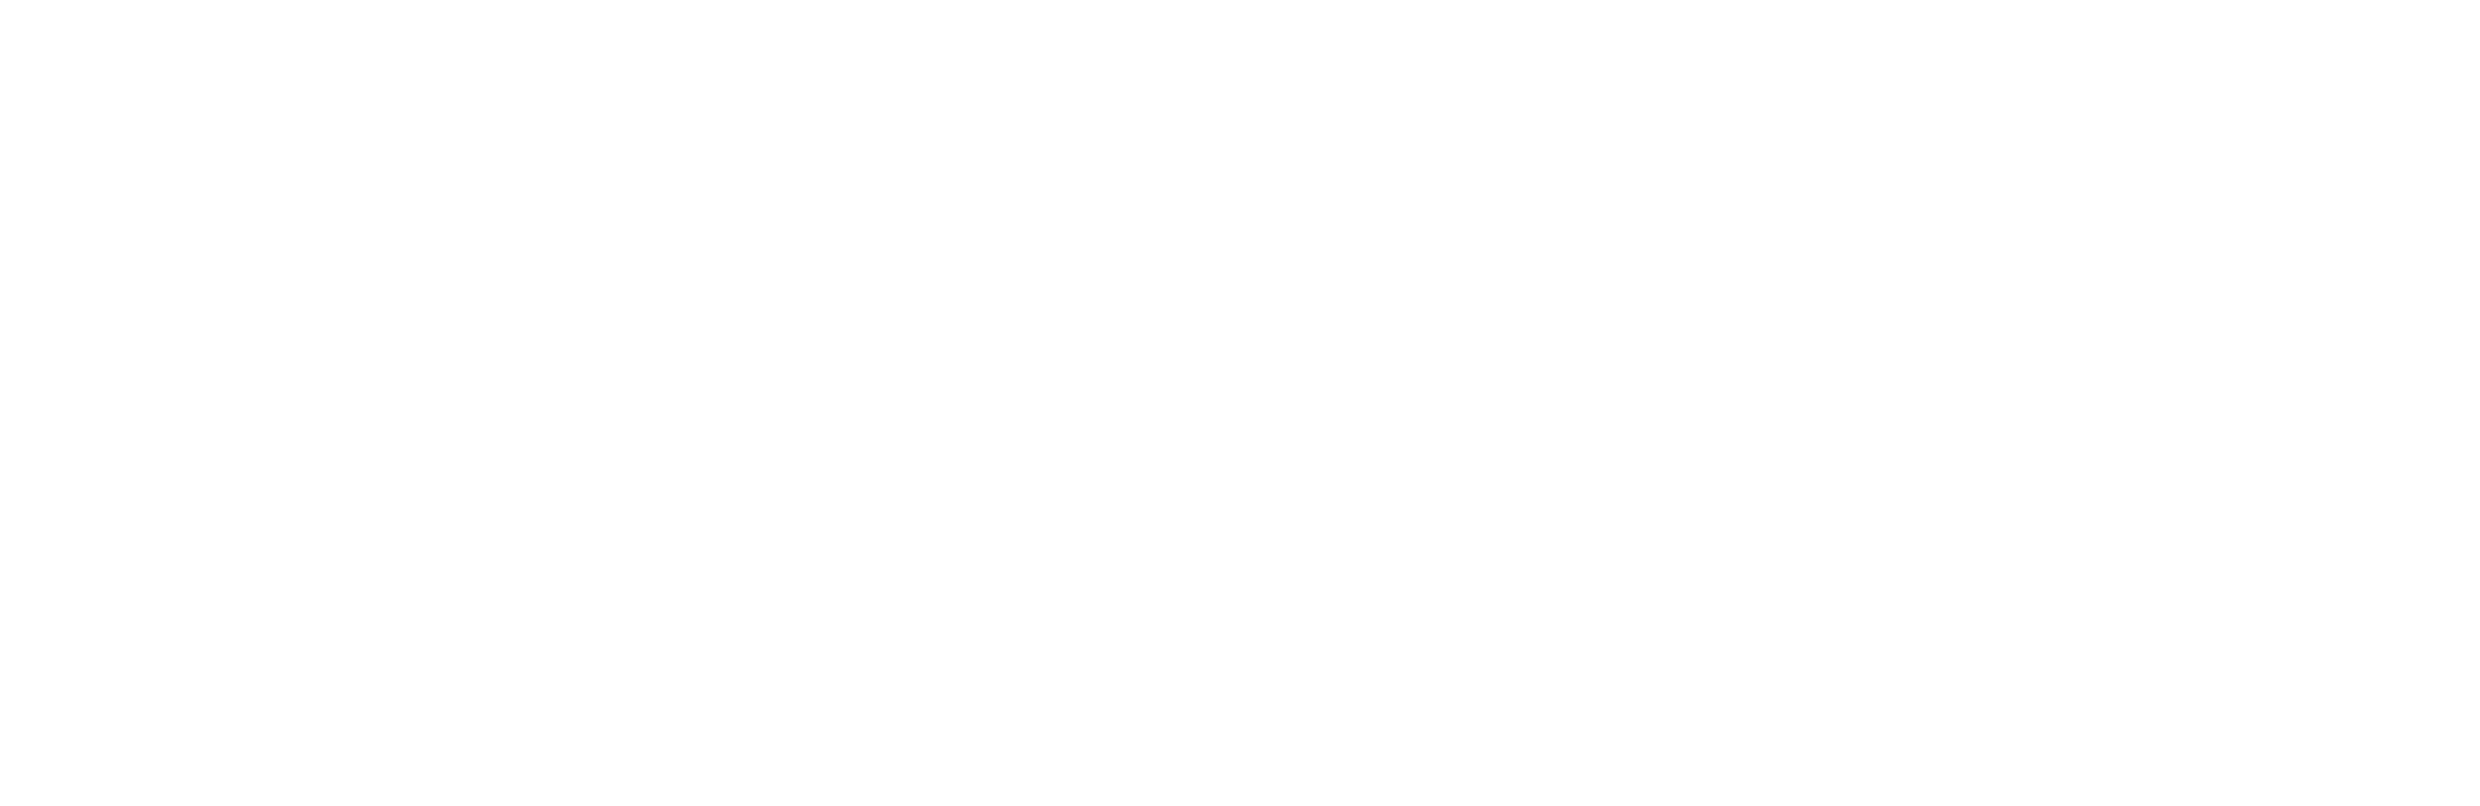 Associazione Dario Valentini F.O.H.